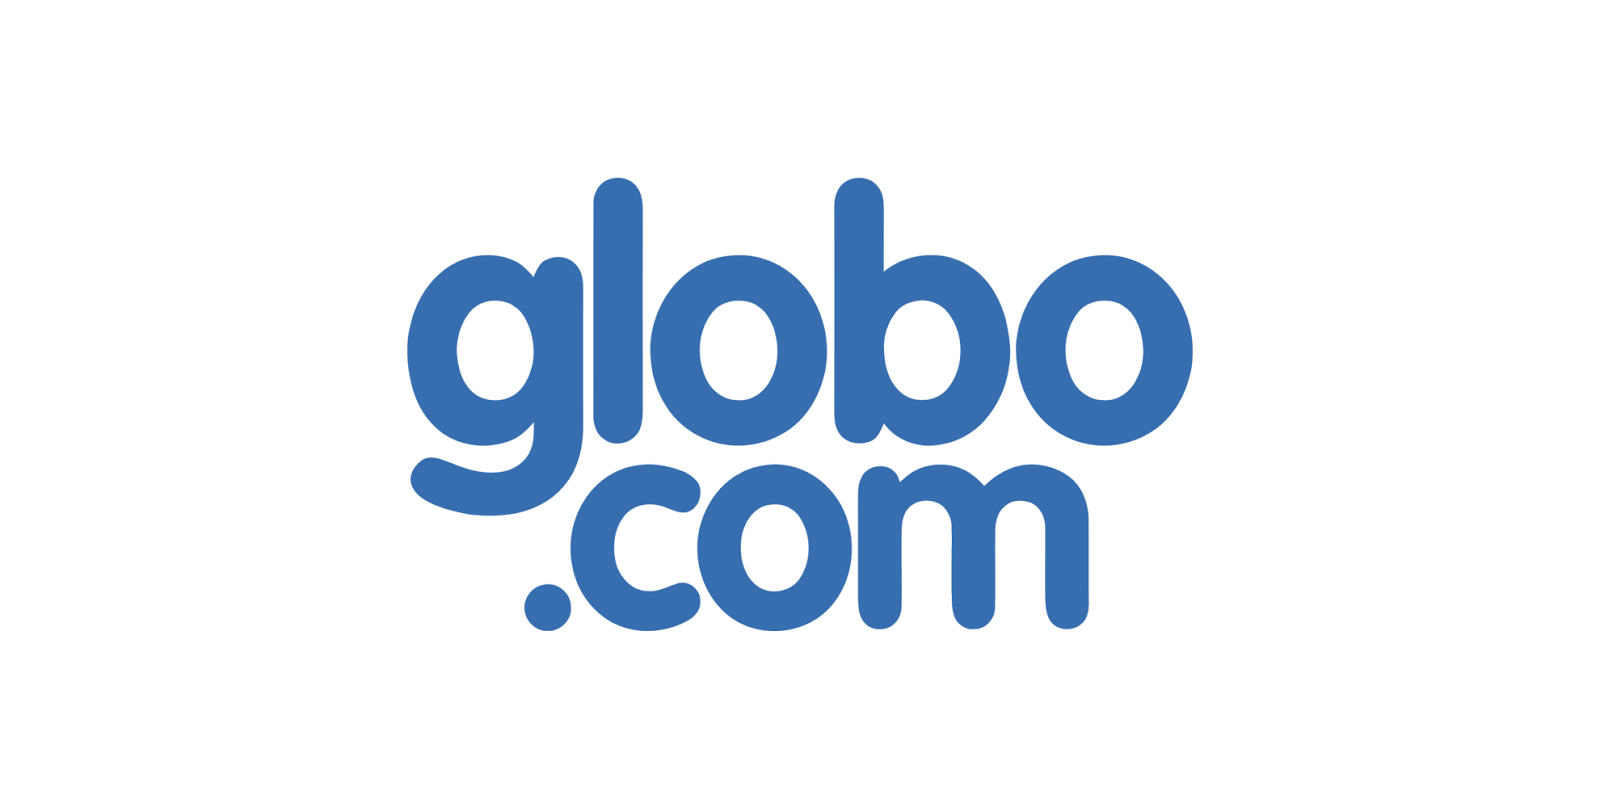 Estágio Globo.Com 2018 – Requisitos e Vagas